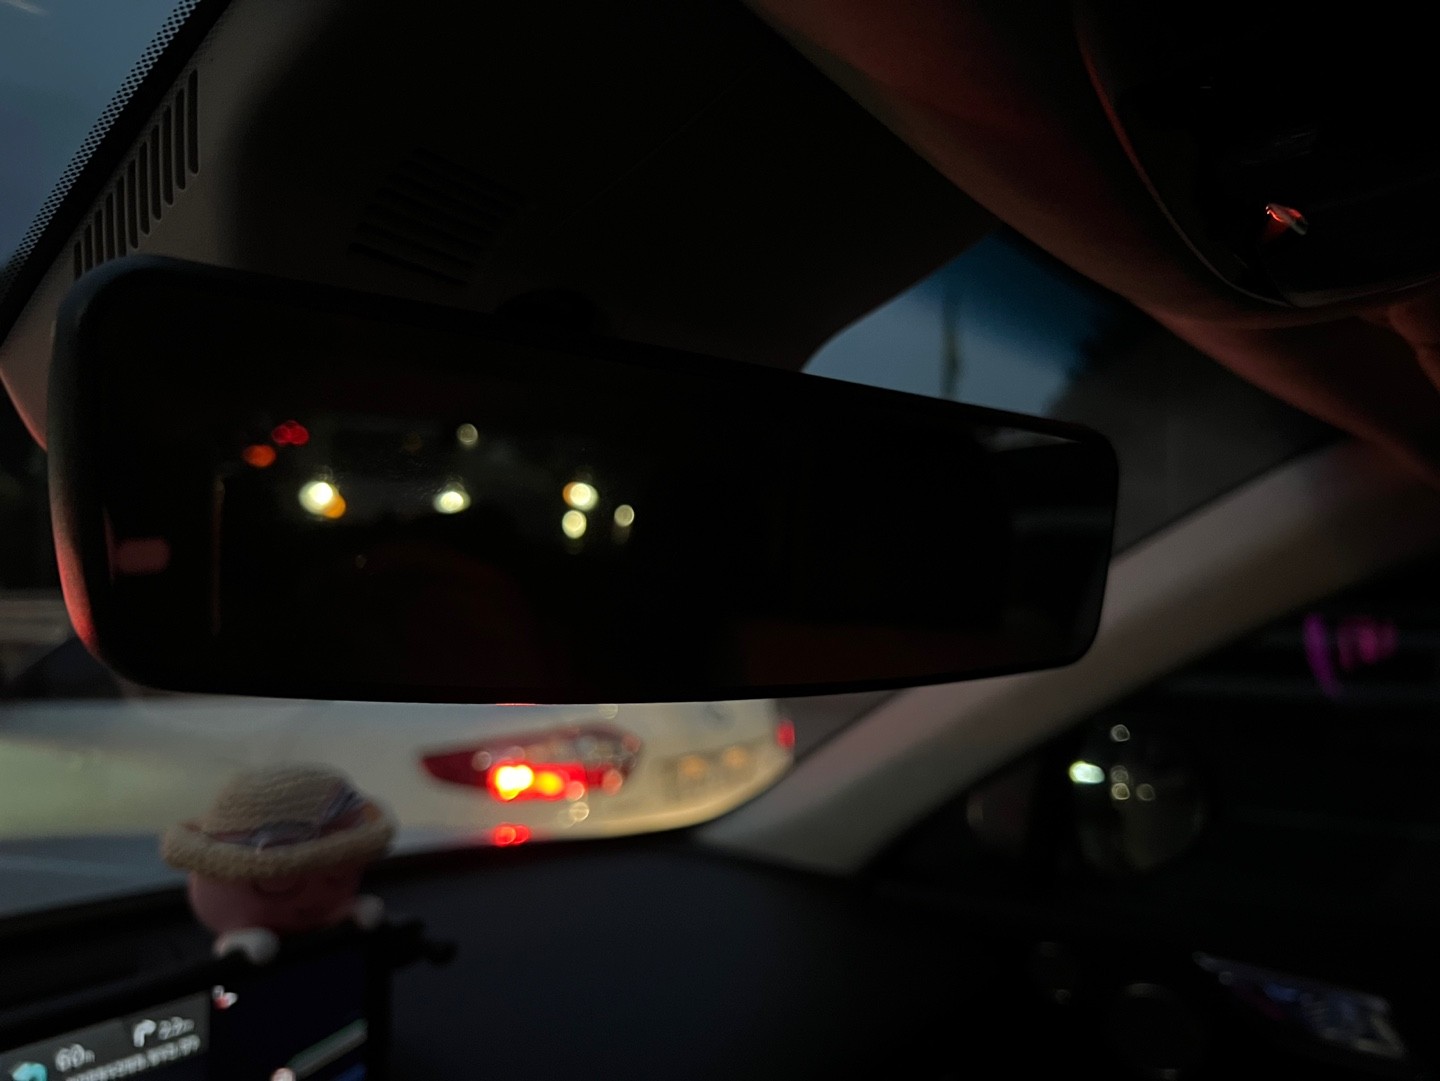 자동차, 거울, 바람막이, 차량이(가) 표시된 사진

자동 생성된 설명